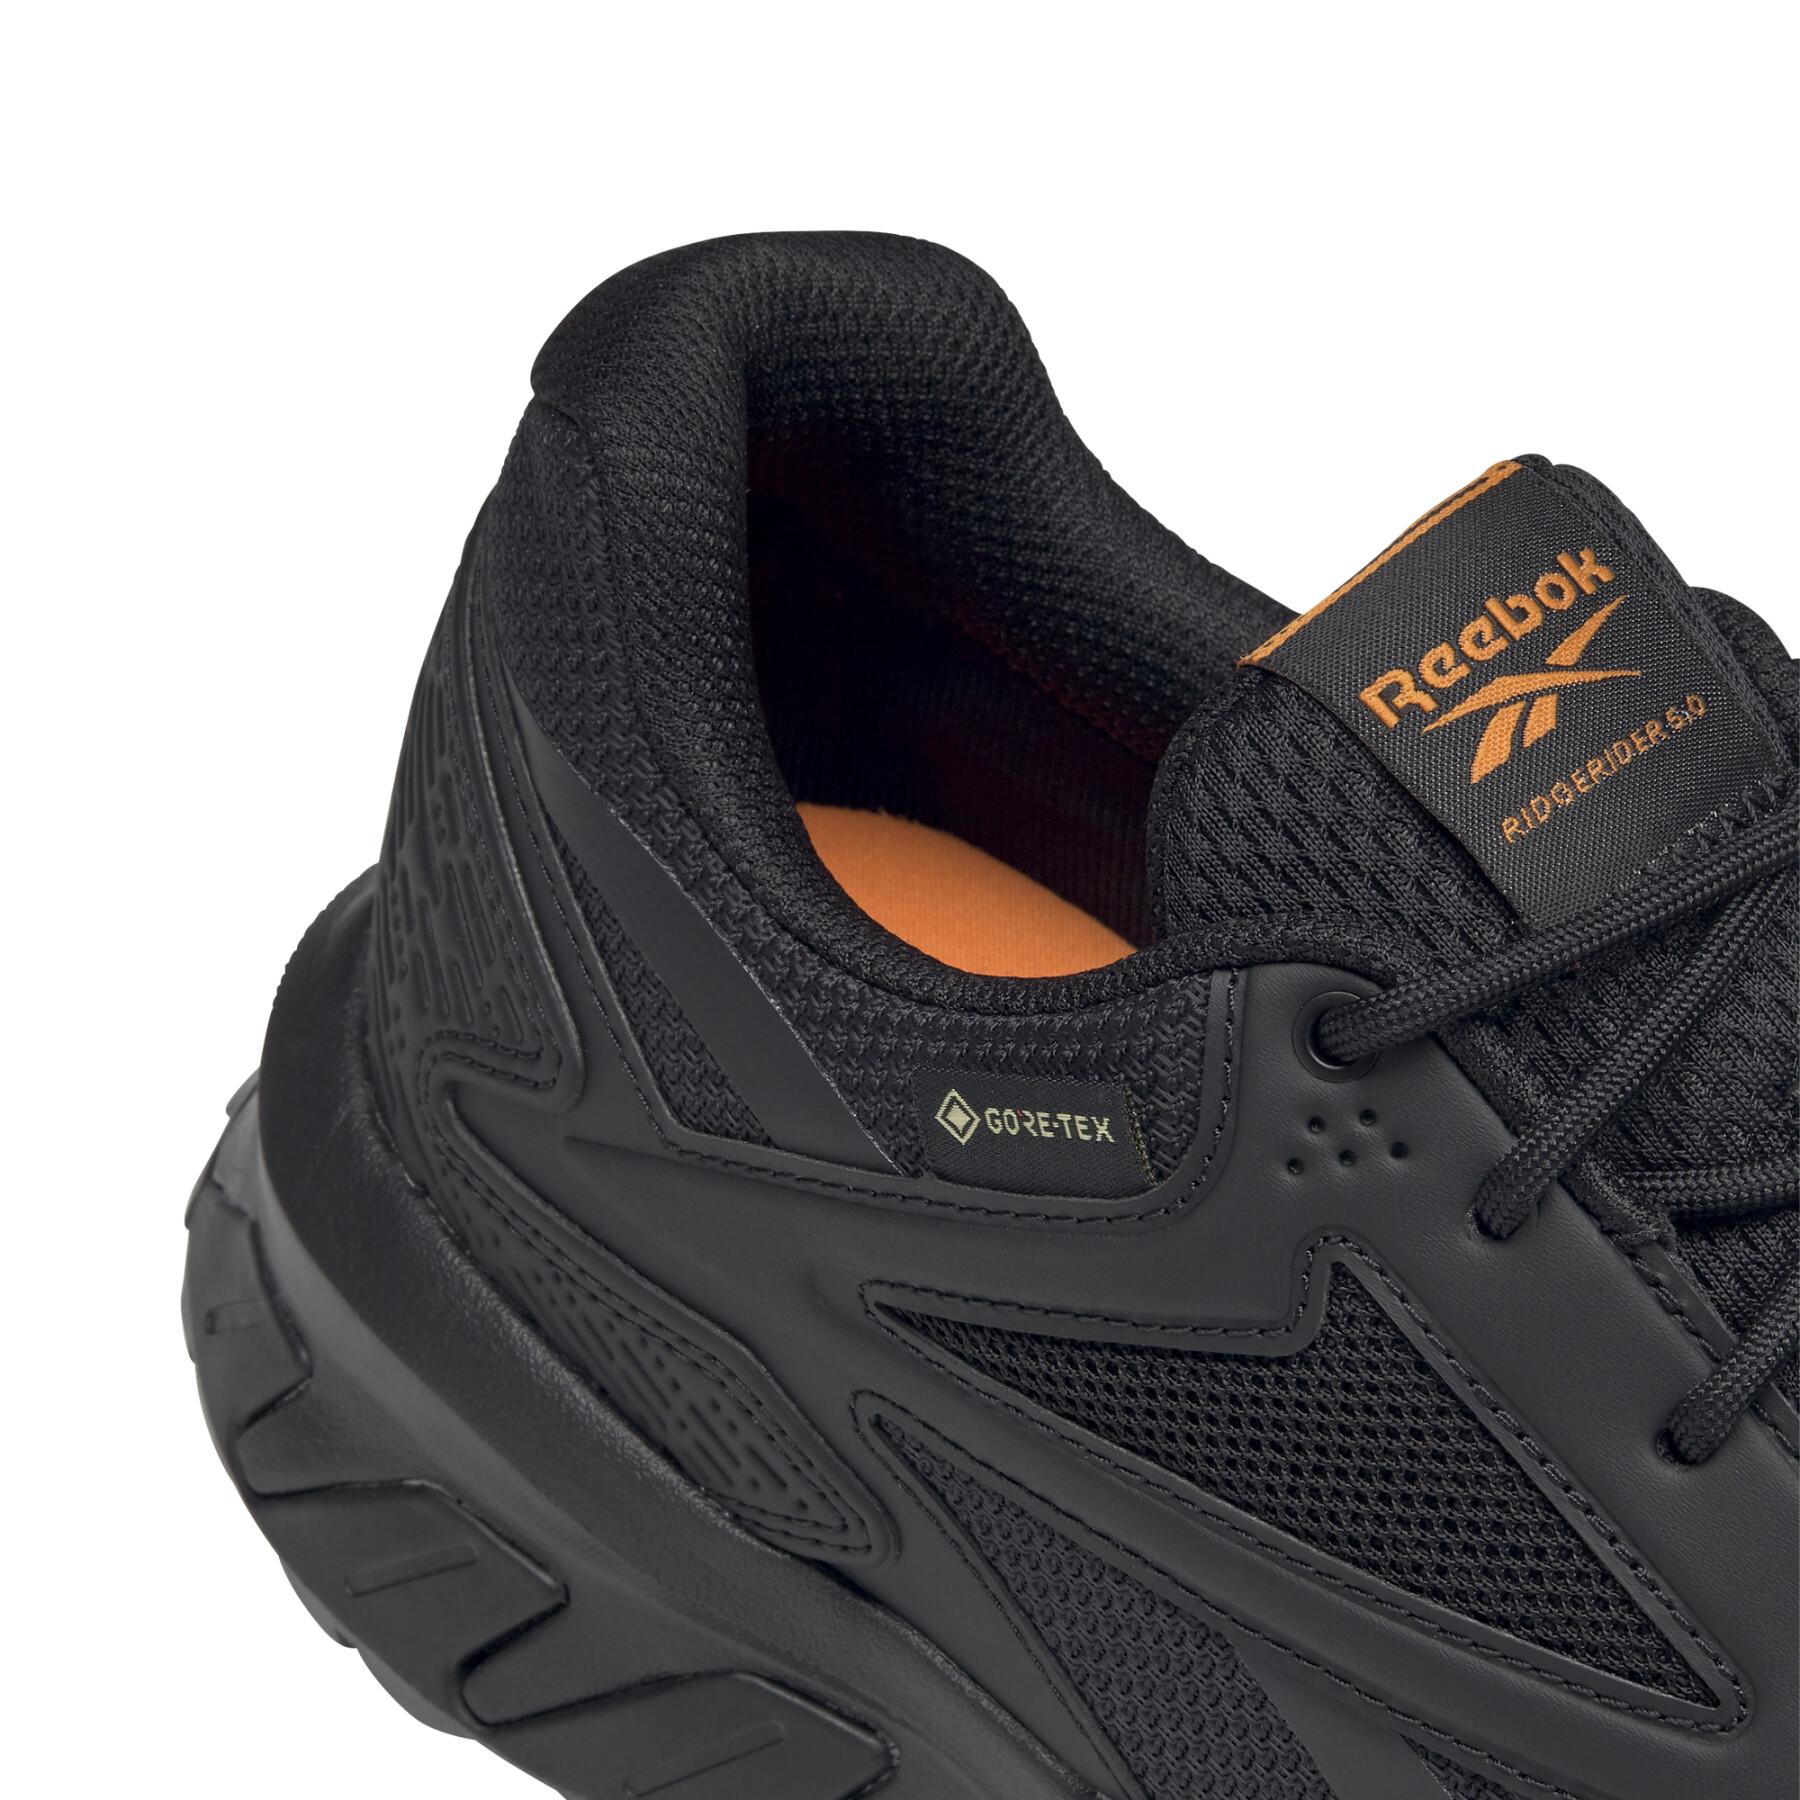 Sapatos Reebok Ridgerider GTX 5.0